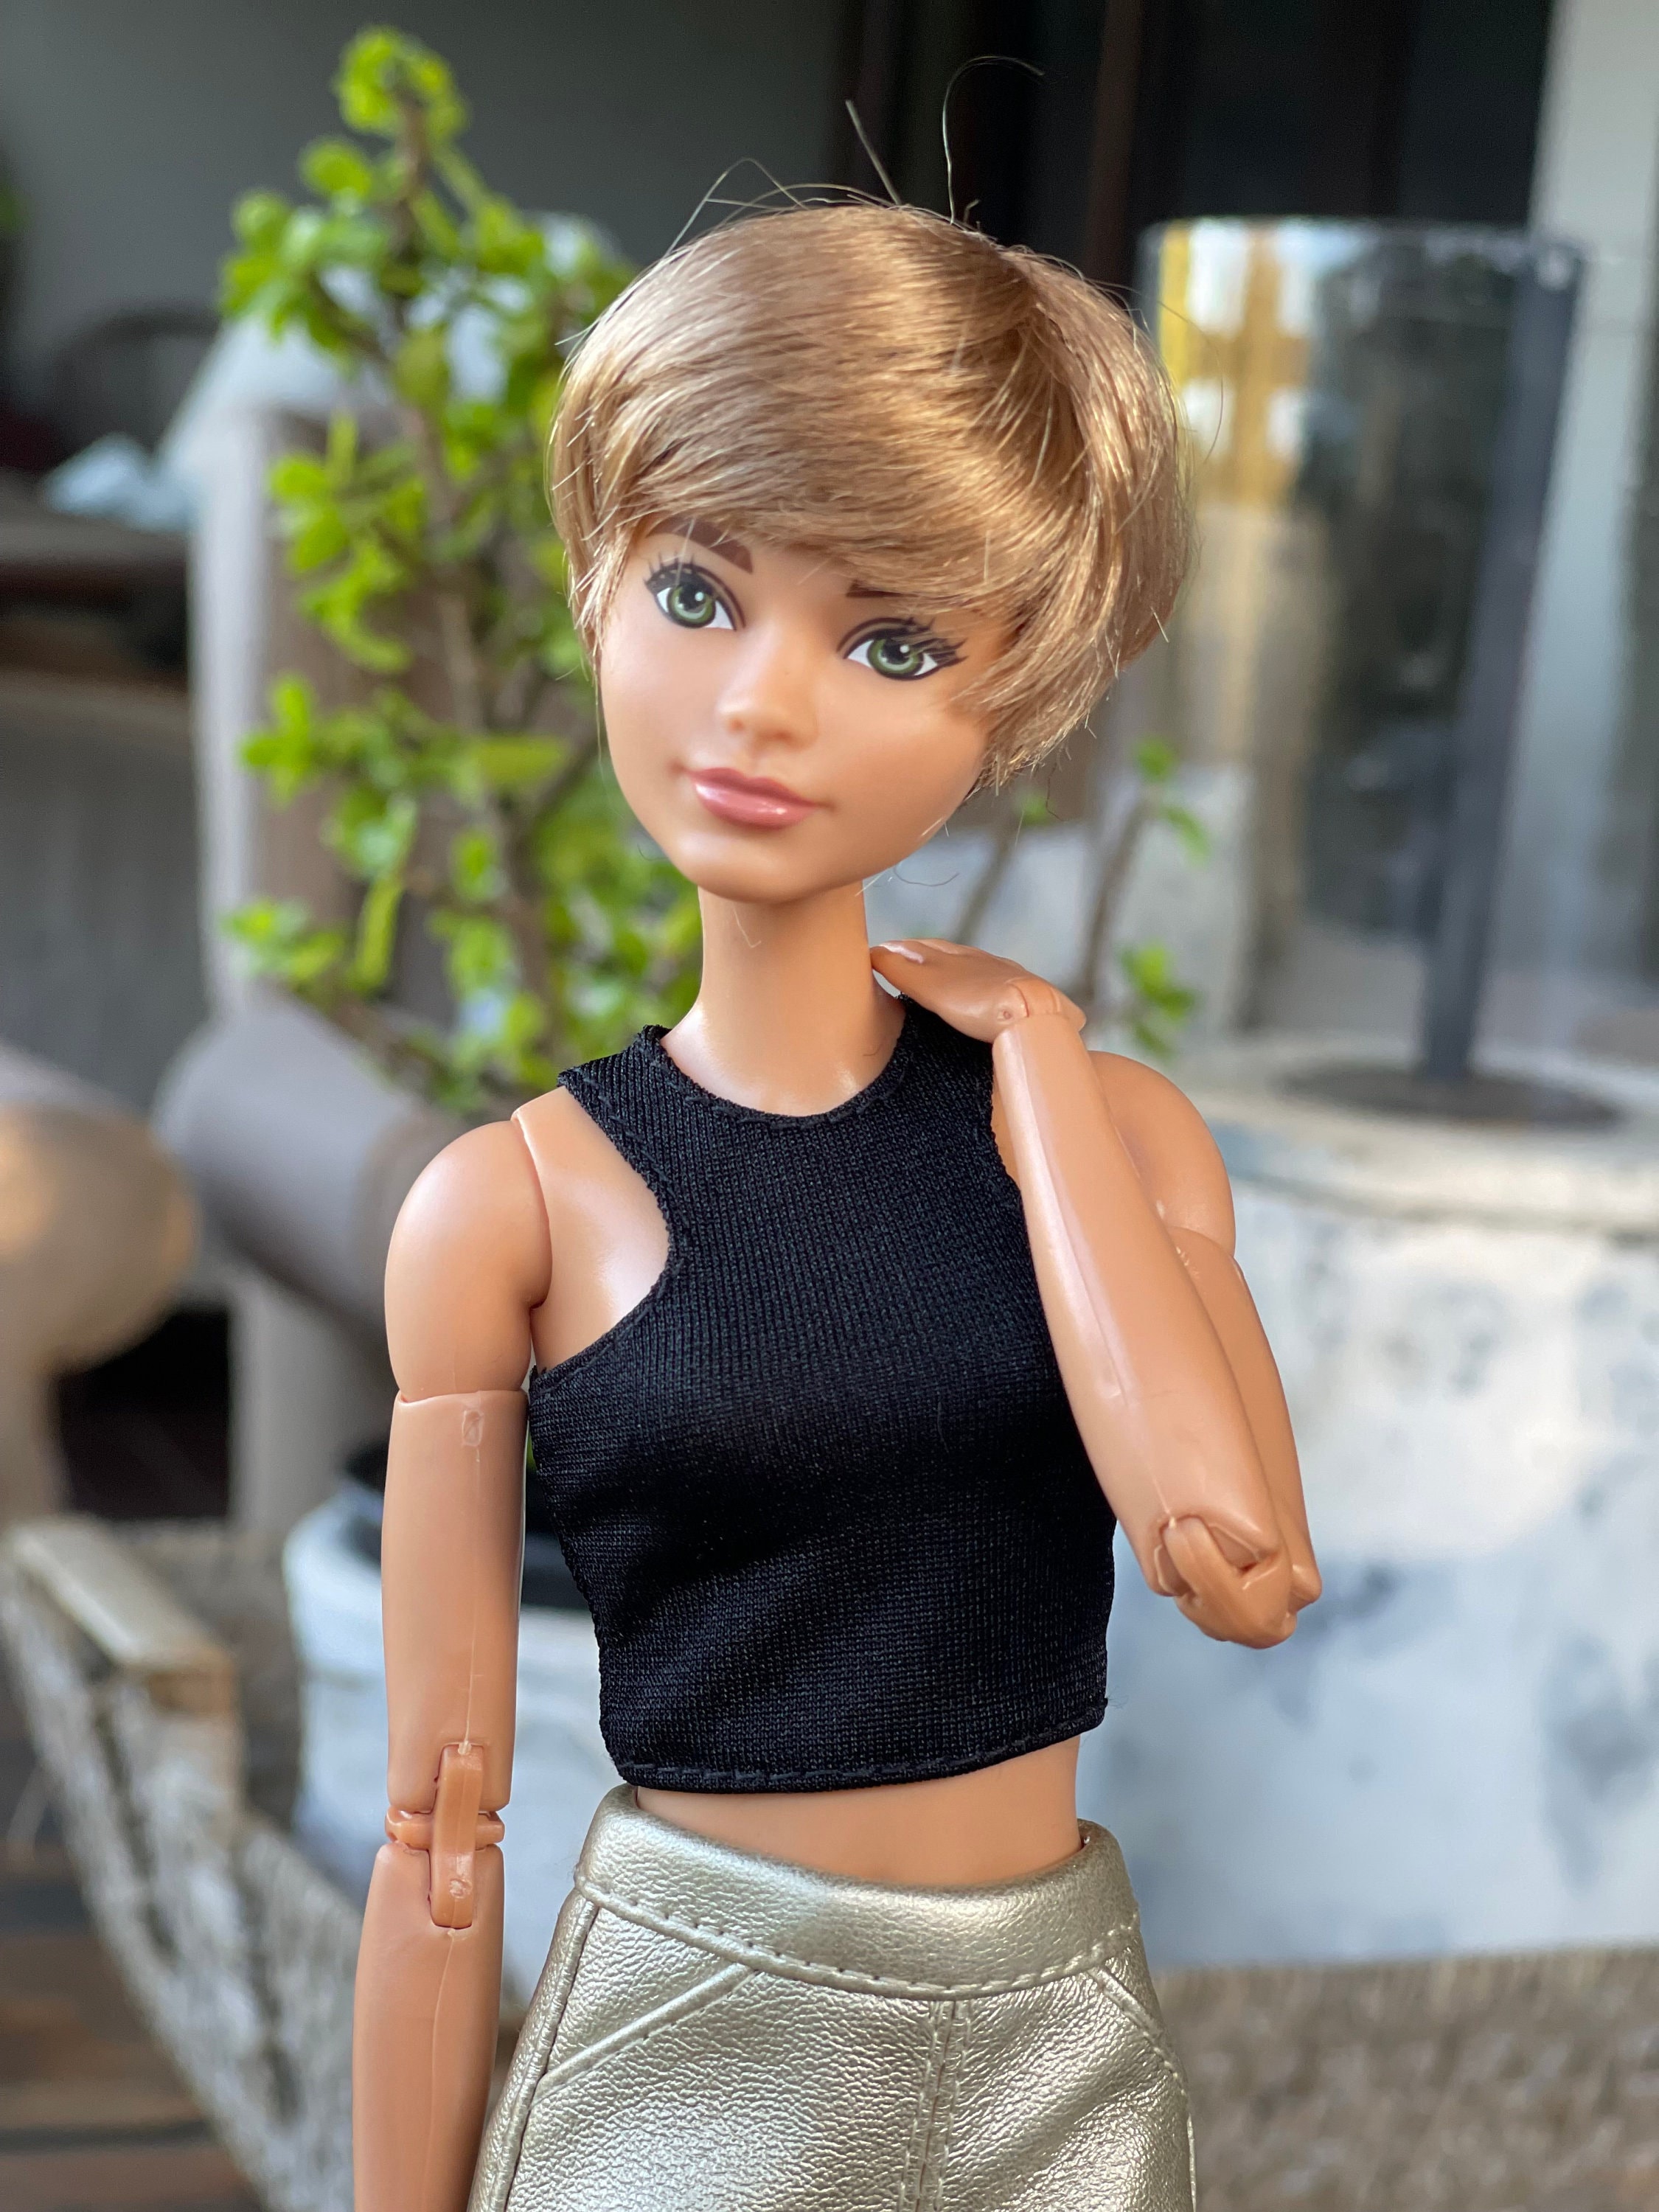 Parrucca personalizzata in scala 1/6 per Barbie Fashion Doll dimensione  della testa 3-4 BJD Dollfie pukipuki Bf Pocket Doll pixie parrucca Zazou  Dolls PREORDER -  Italia